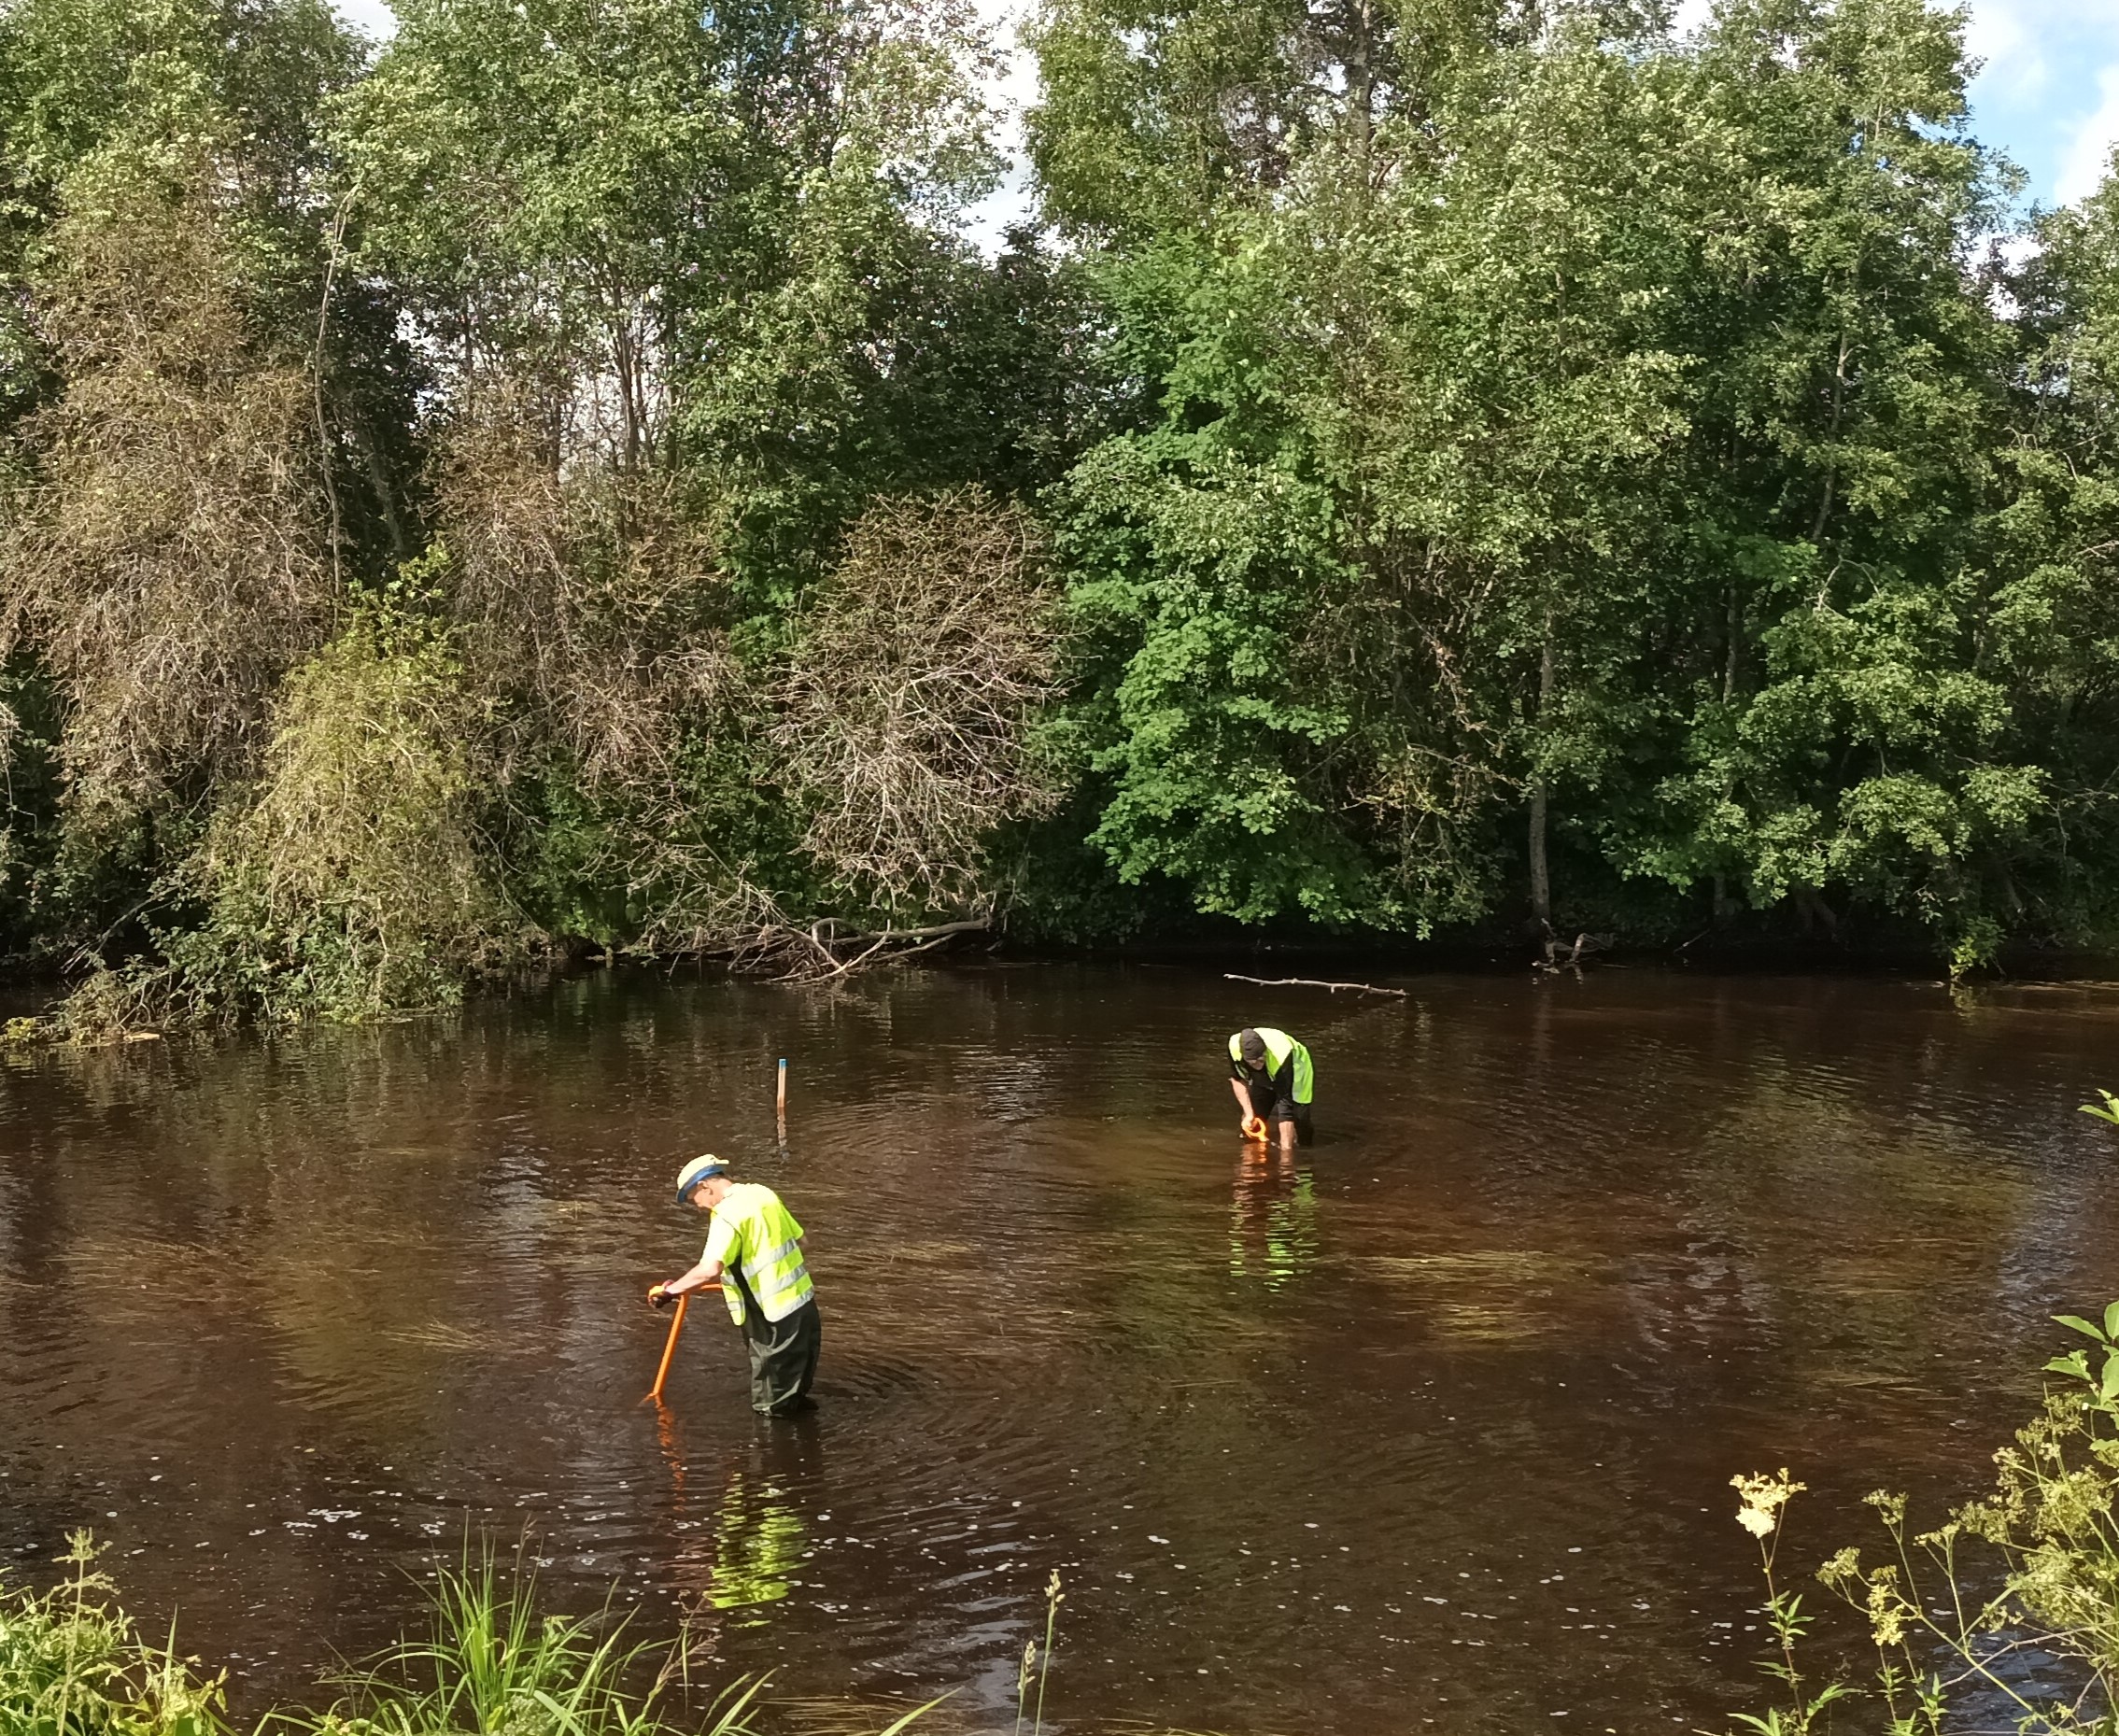 Kaksi henkilöä seisovat joessa ja tekevät kunnostustoimia "hartijoki-menetelmällä", jossa joen pohjaa ns. möyhennetään lapion tapaisilla välineillä..